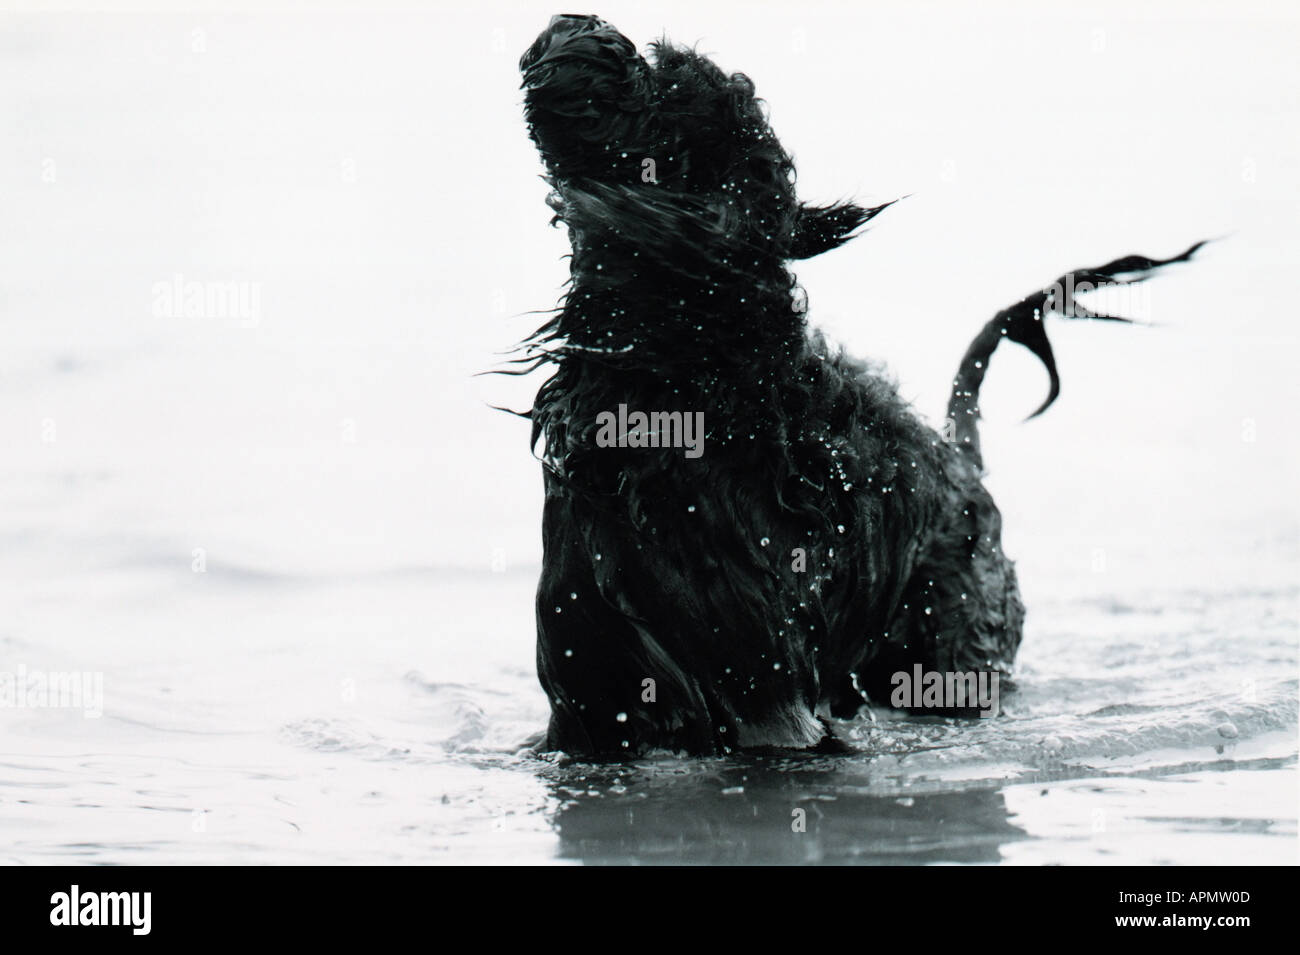 Perro en carro rojo fotografías e imágenes de alta resolución - Alamy